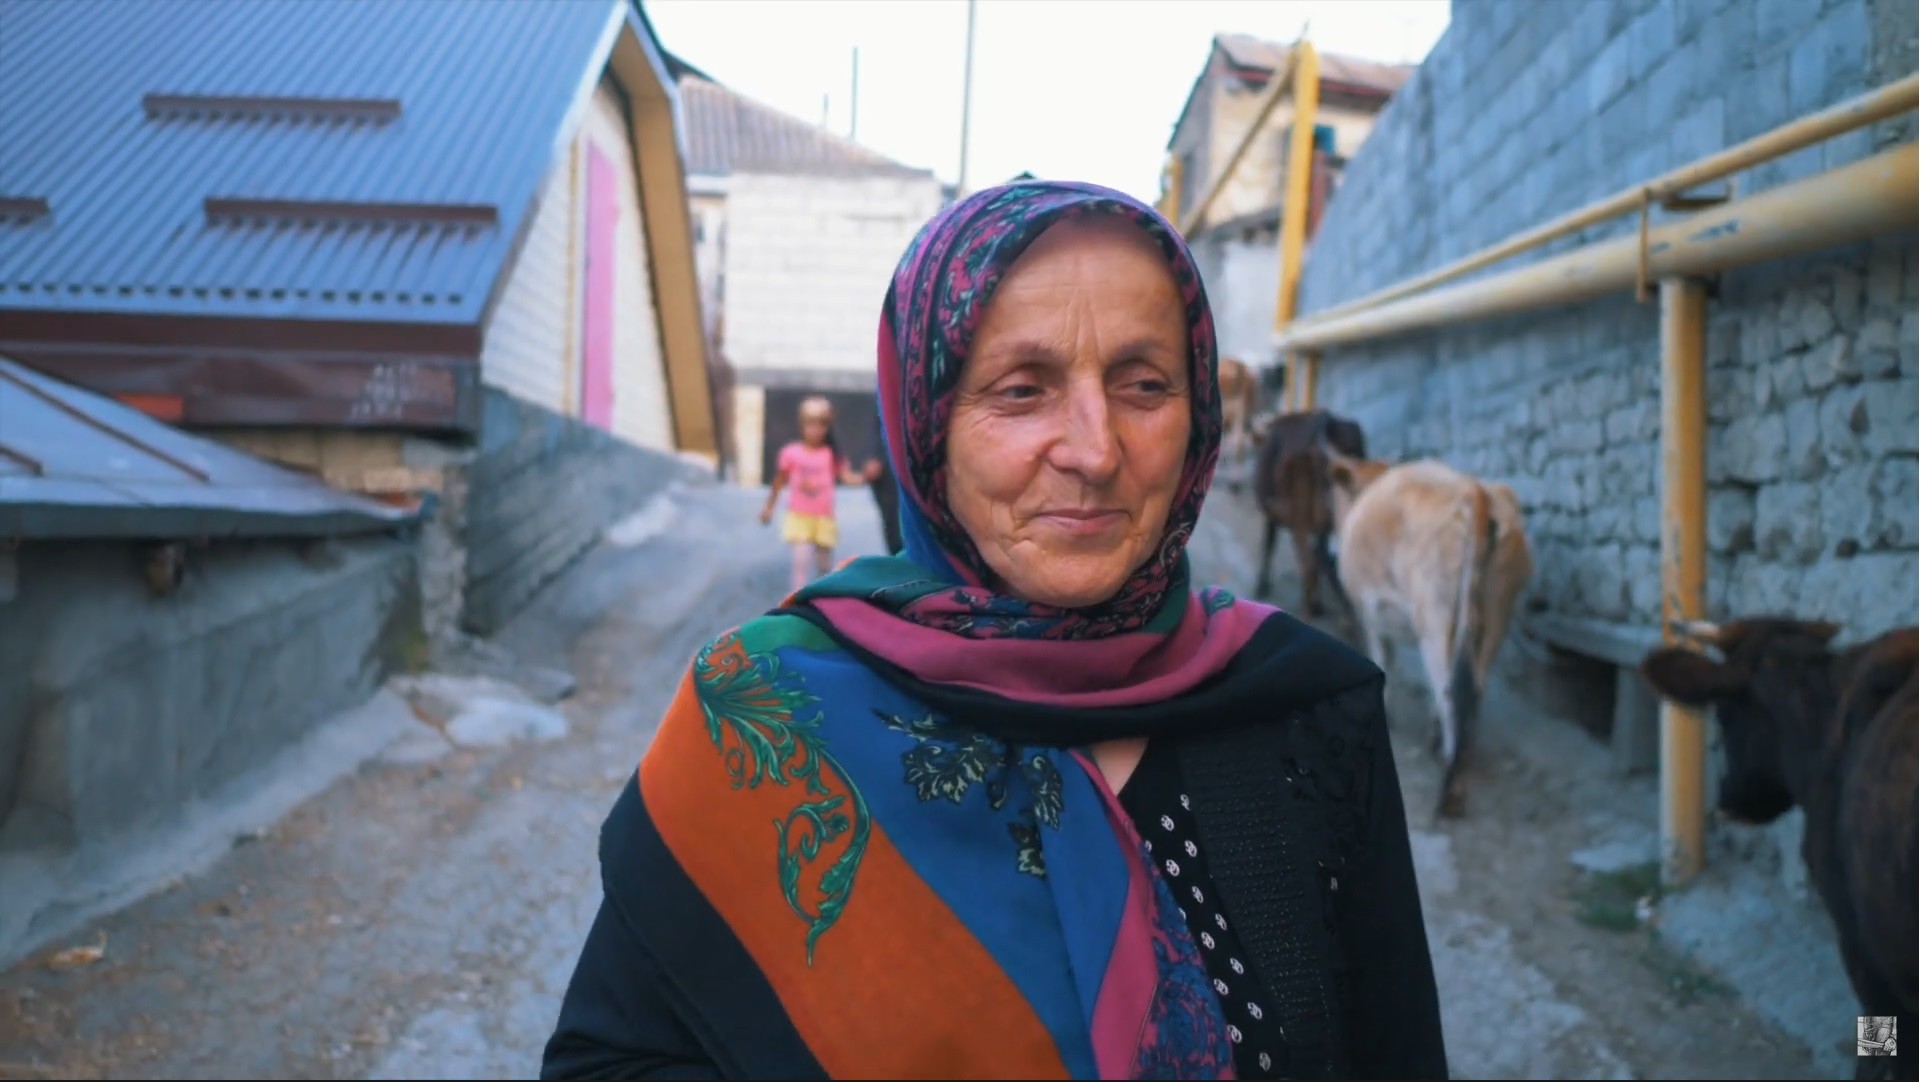 Сайт Знакомства Женщин Дагестана